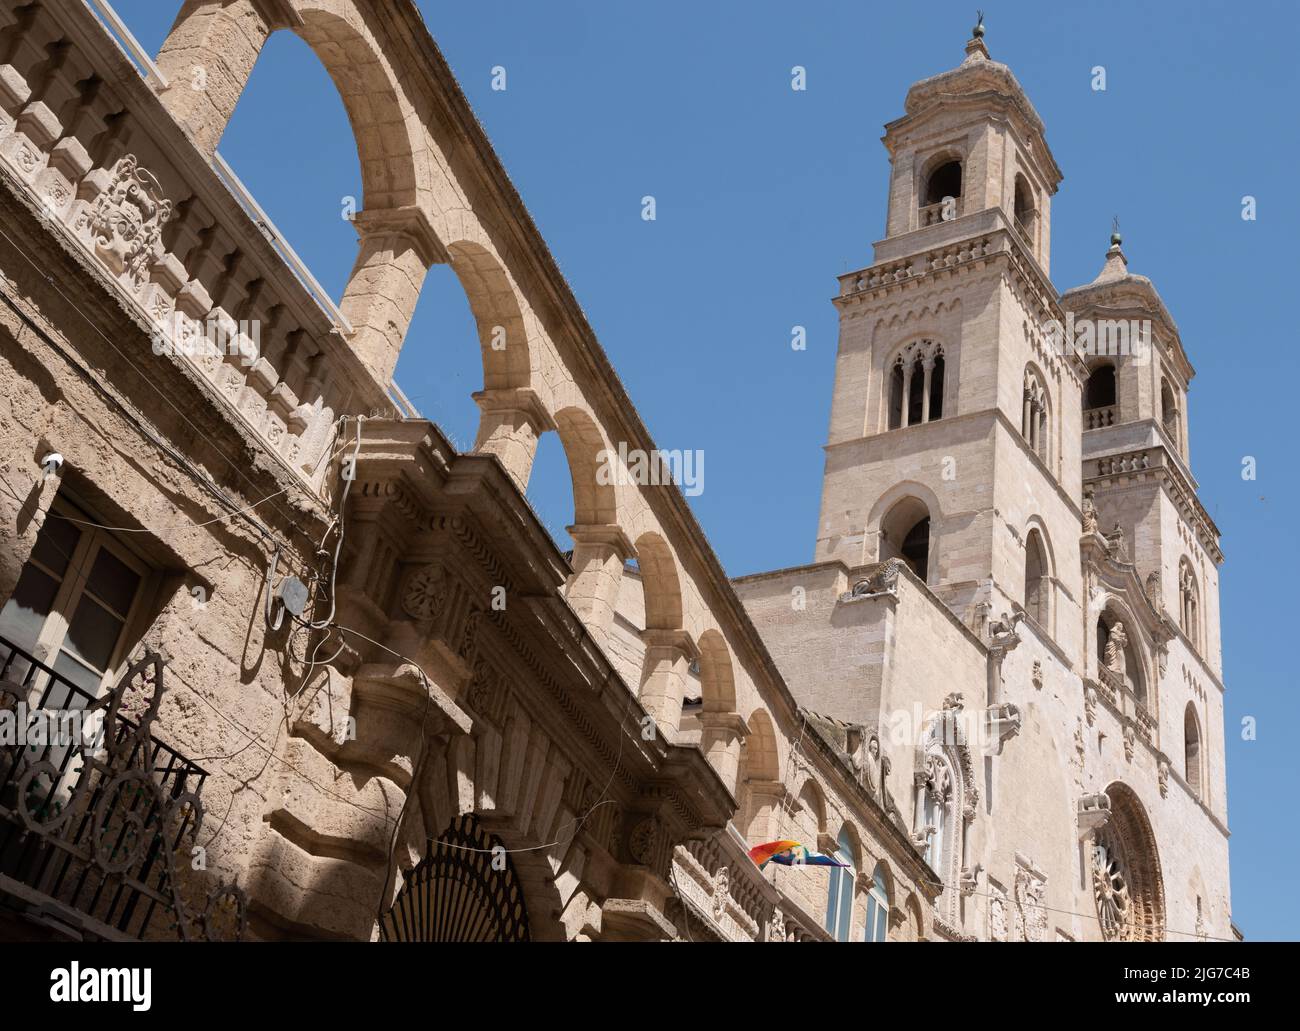 Die barocke Kathedrale der apulischen Stadt Altamura in Italien mit ihren zwei Glockentürmen, Rosenfenstern und Zierbögen an der Seite. Stockfoto